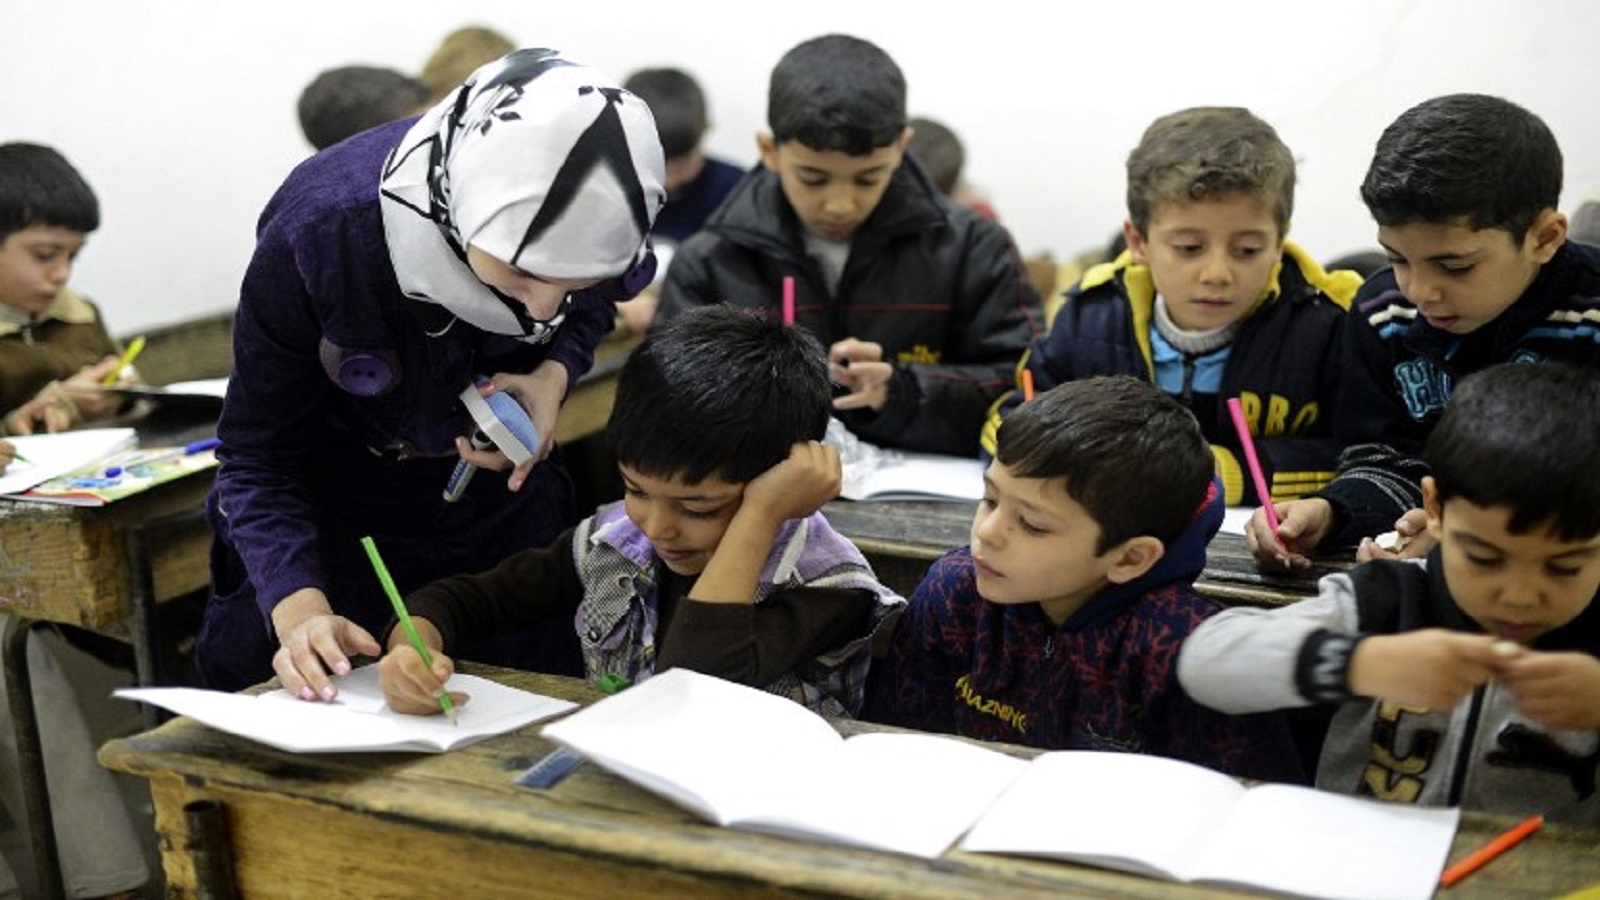 سوريا: الحرب لم تترك تعليماً ولا من يعلّمون